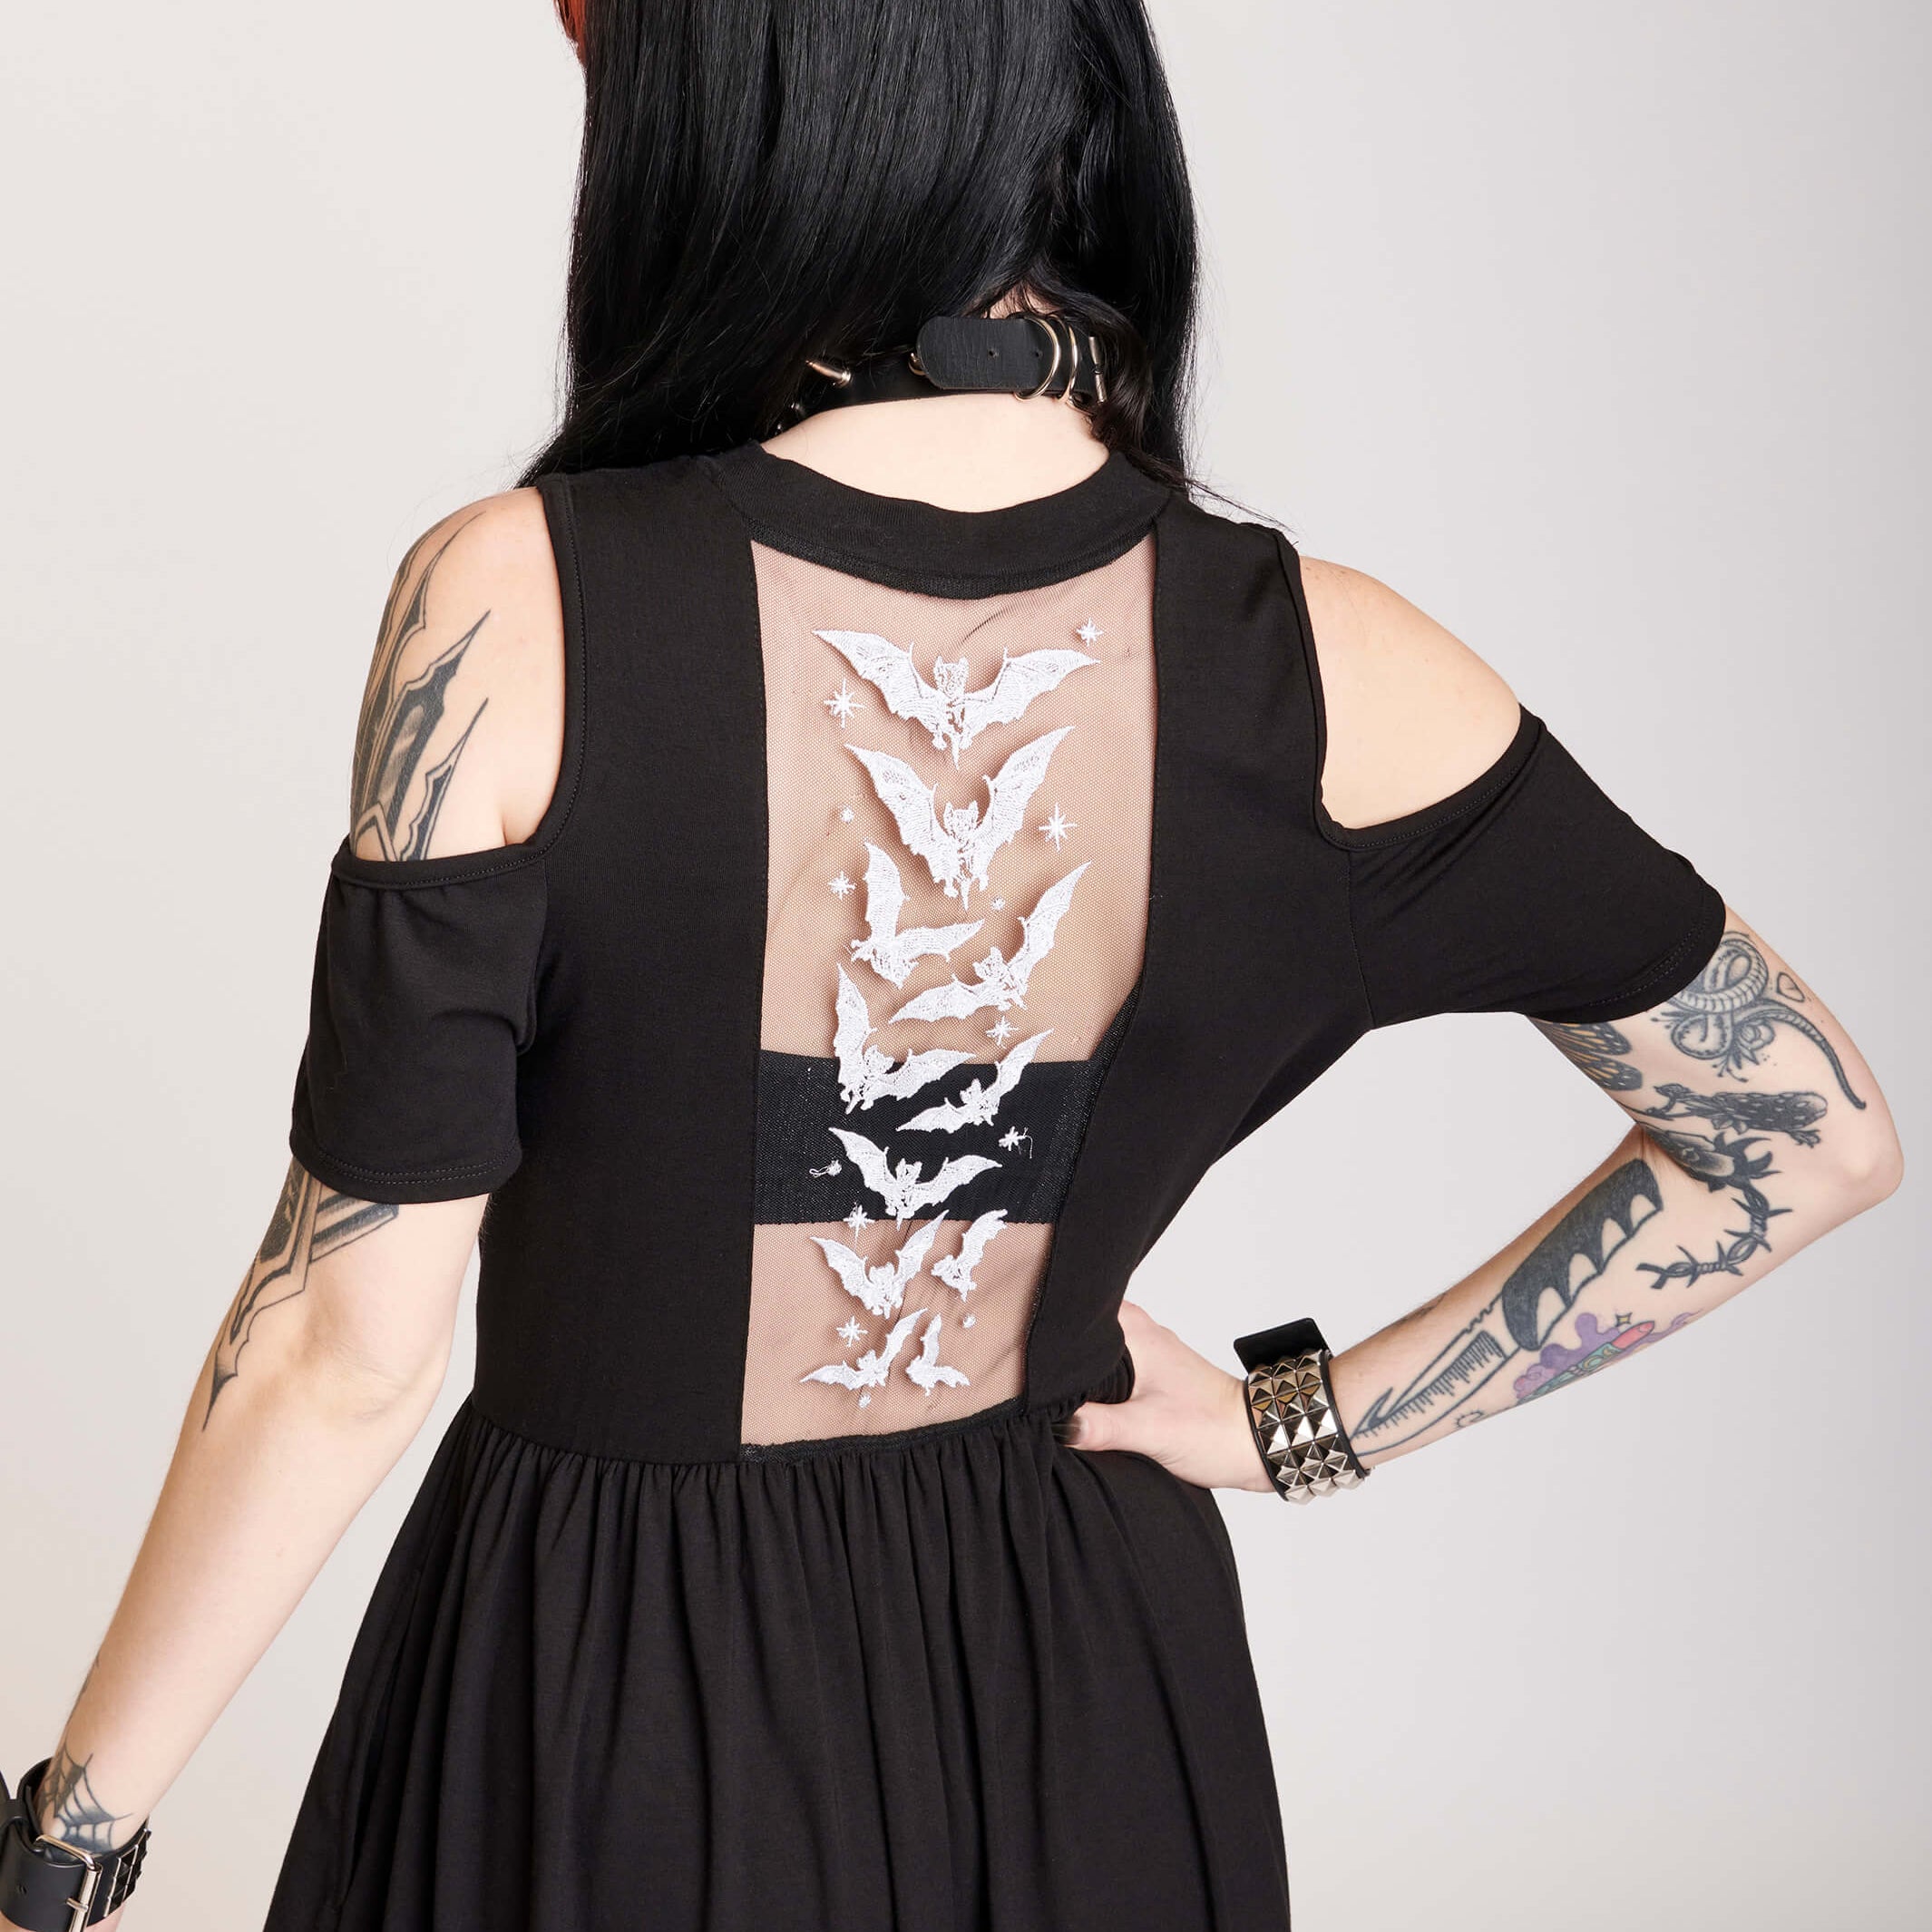 cold shoulder dress with bat embroidered mesh back panel.